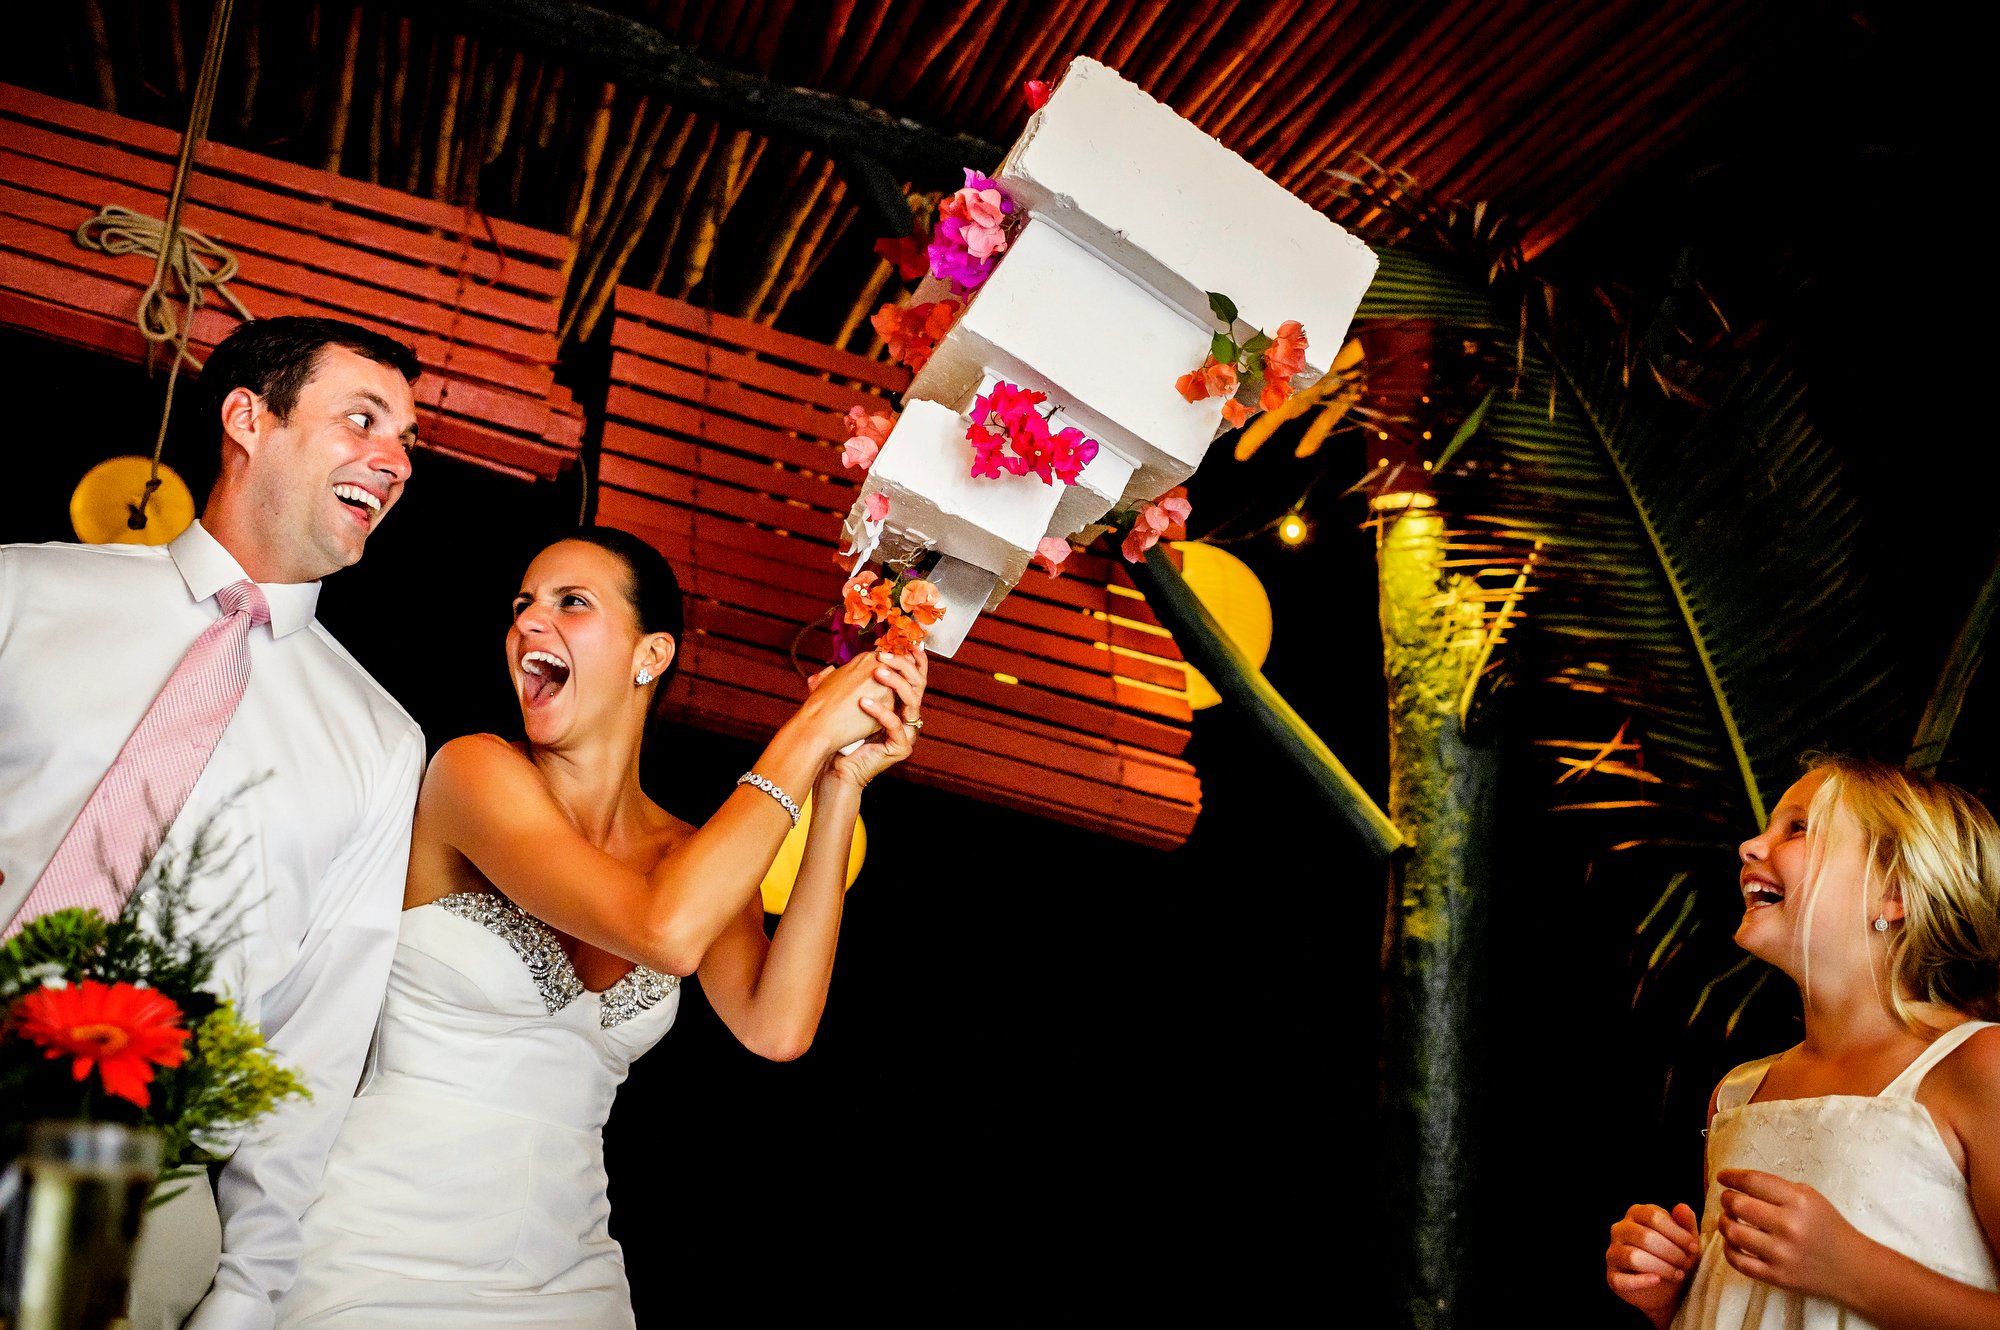  Stephanie and Joe's wedding at Casa Golondrinas in La Manzanilla, Mexico. 